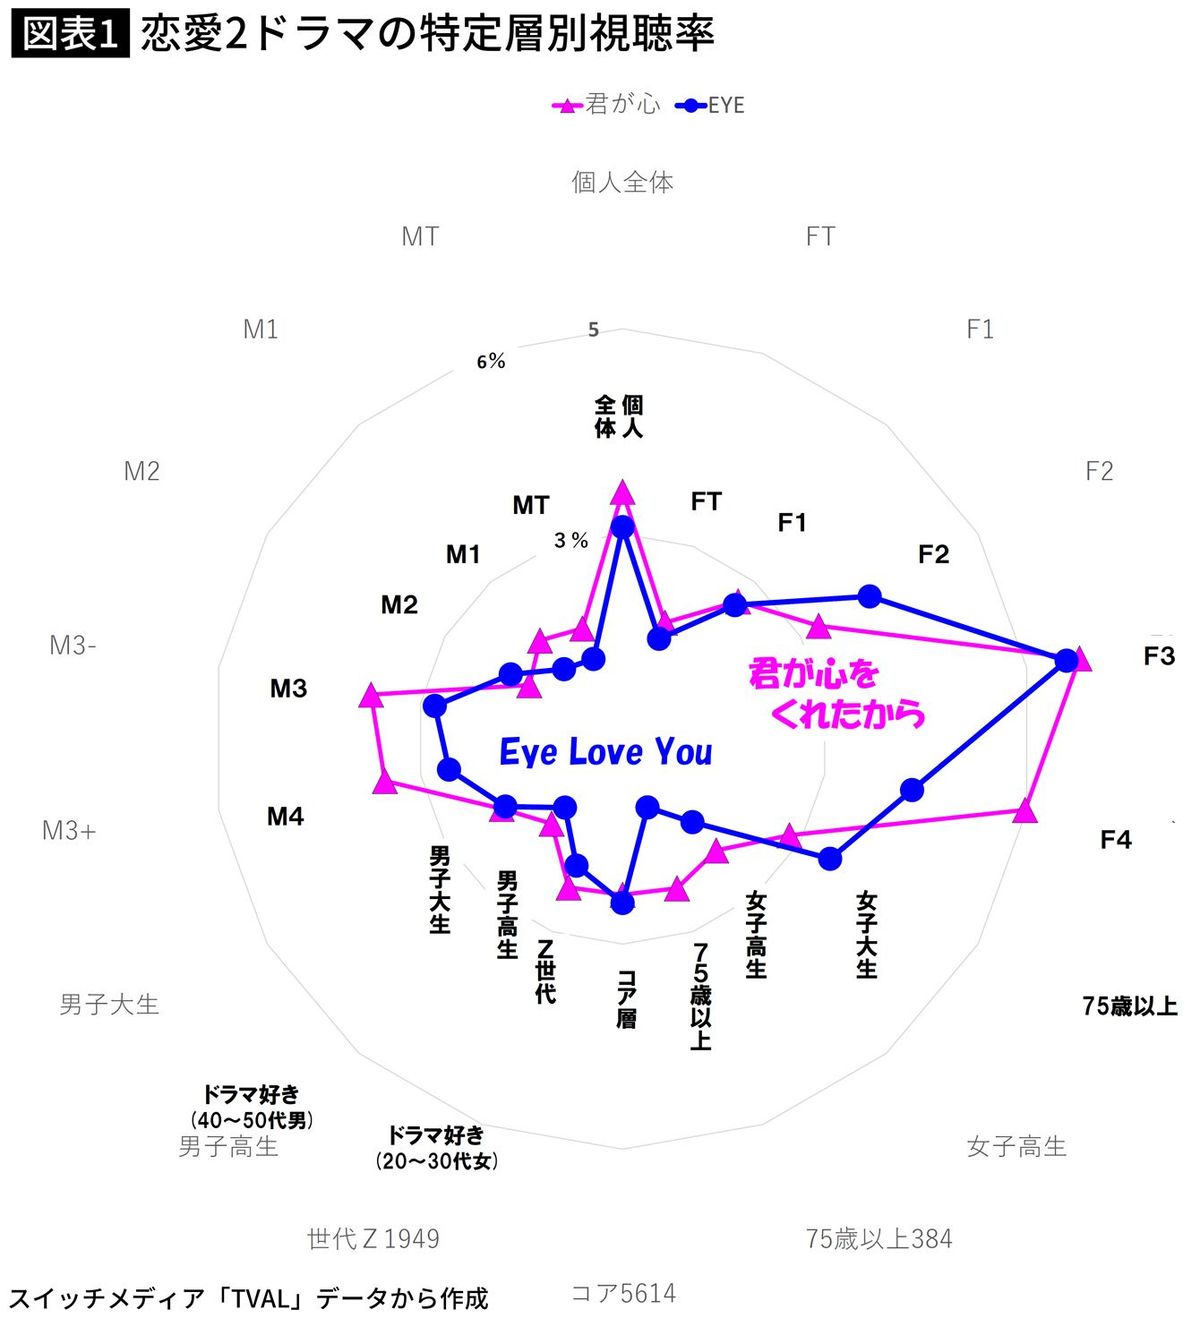 【図表】恋愛2ドラマの特定層別視聴率